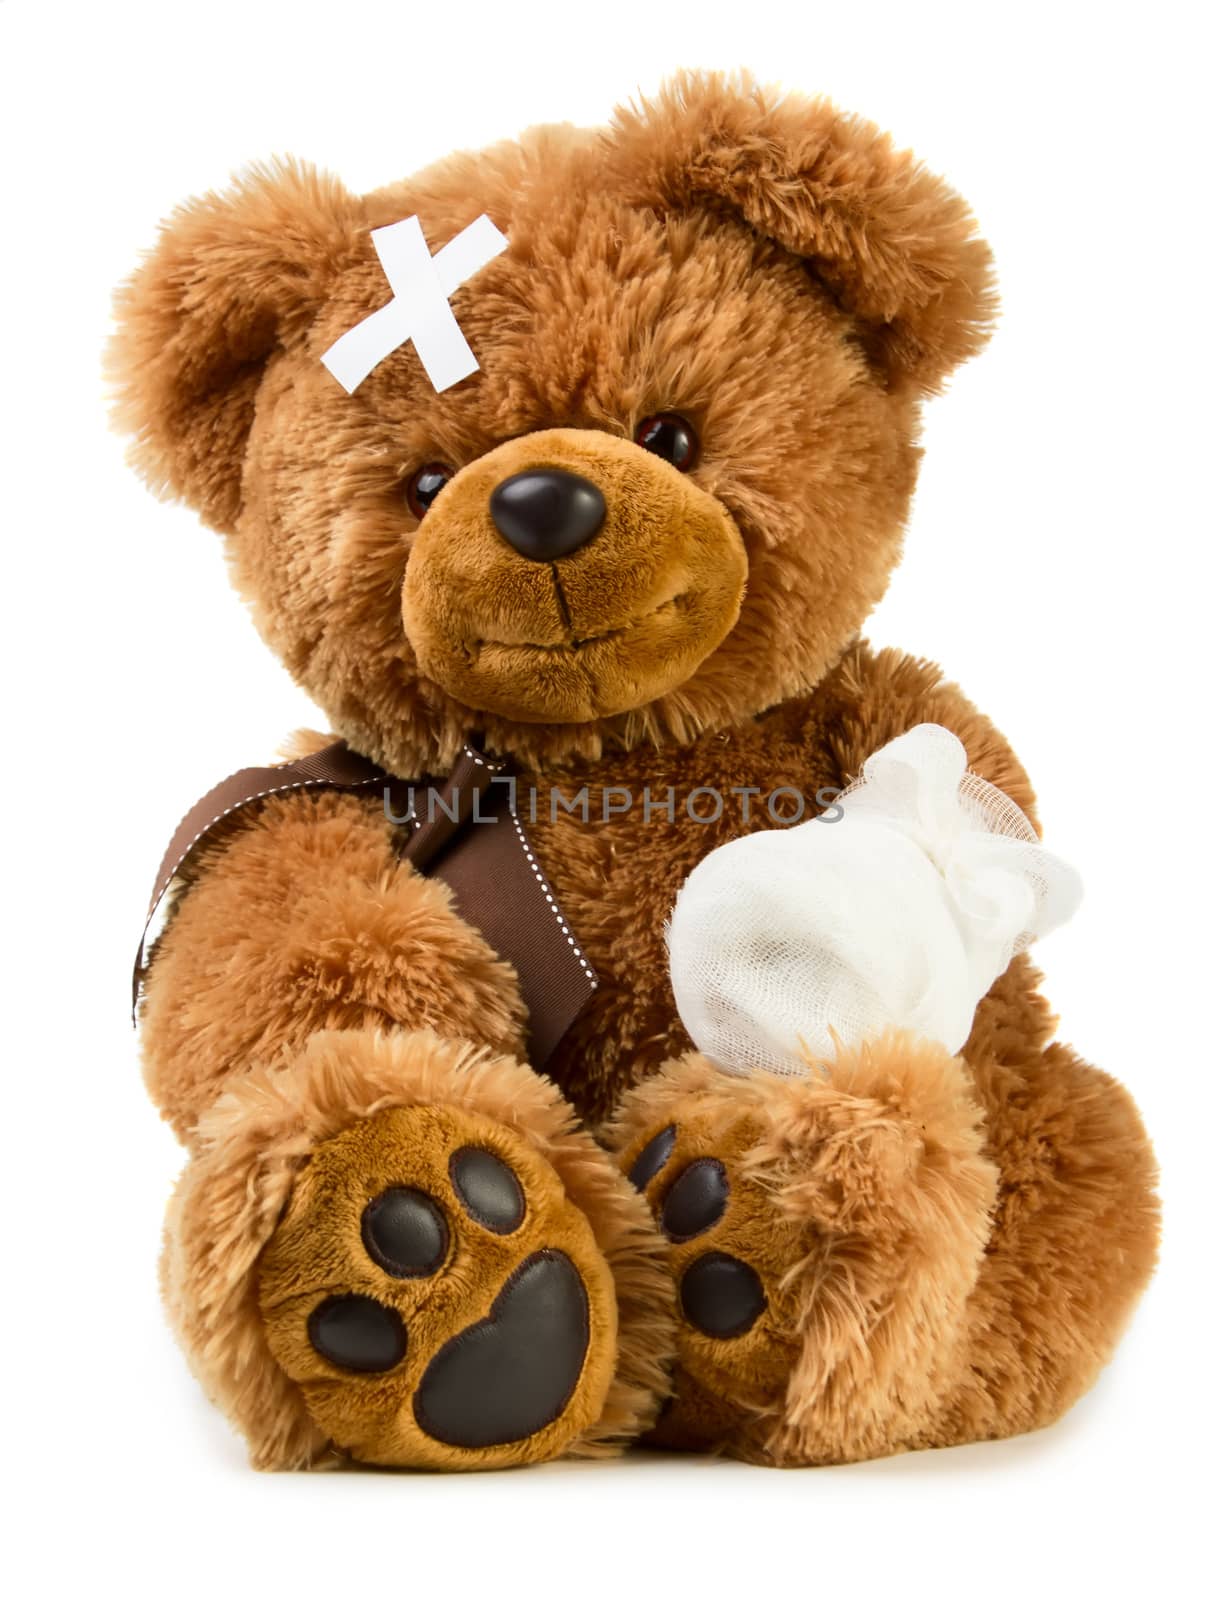 Teddy bear with bandage isolated on white background